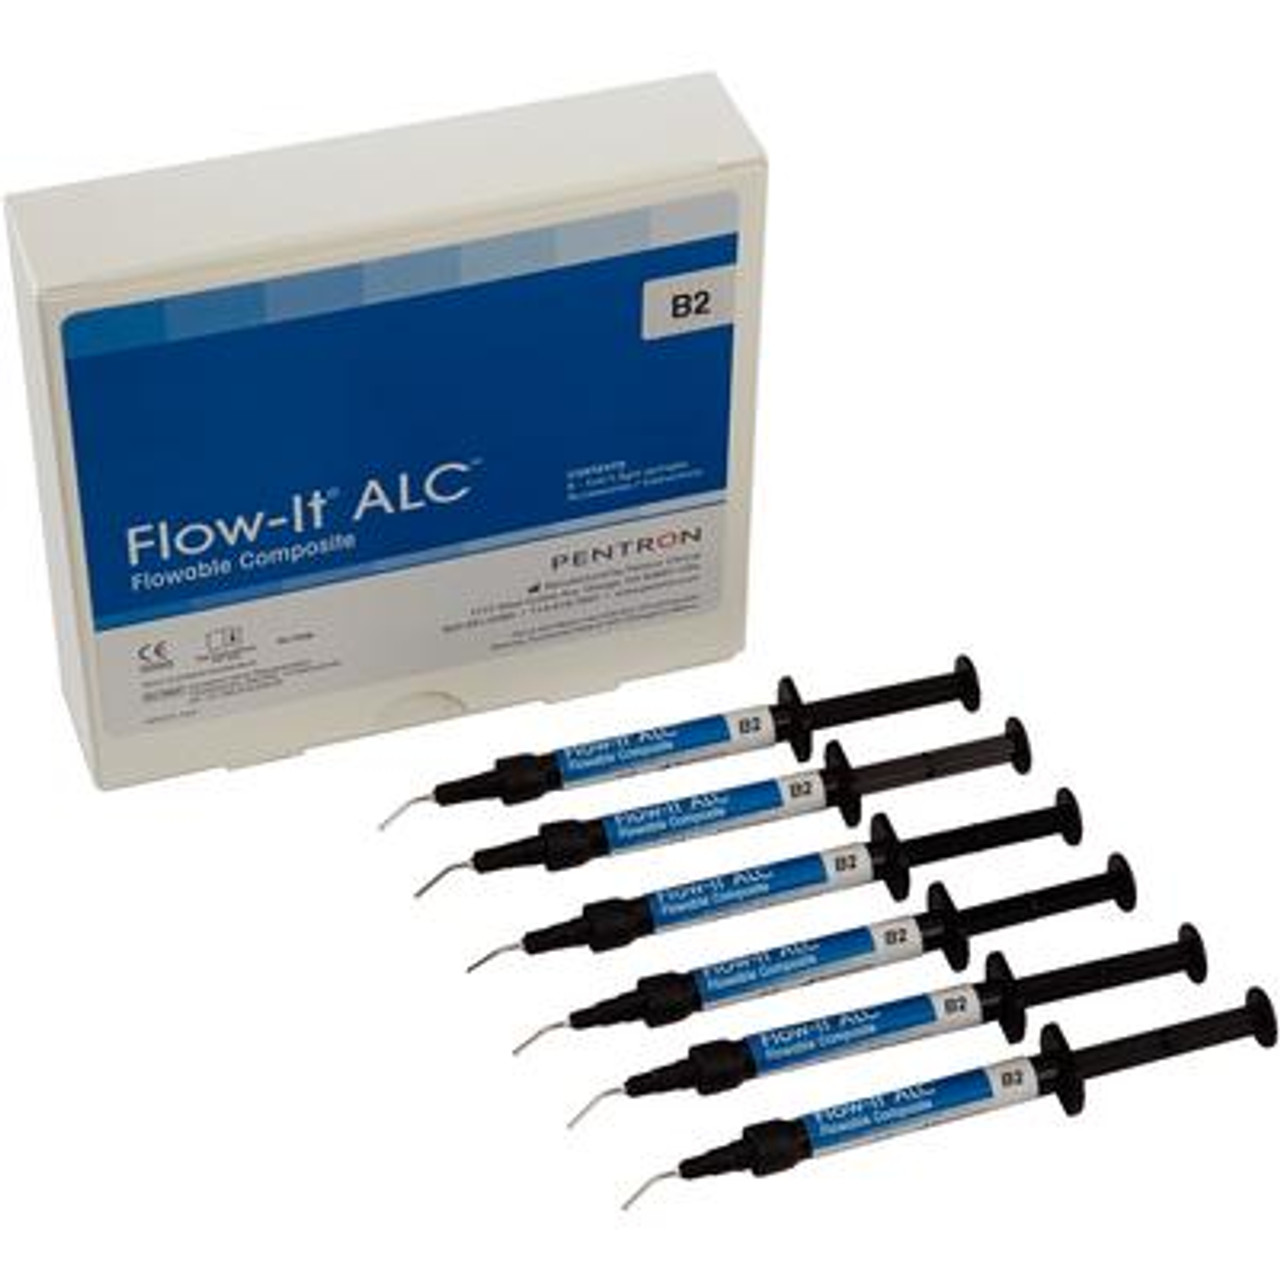 Pentron Flow-It ALC Flowable Composite B2 A0 Value Pack Syringe 6x1.5g & Tips